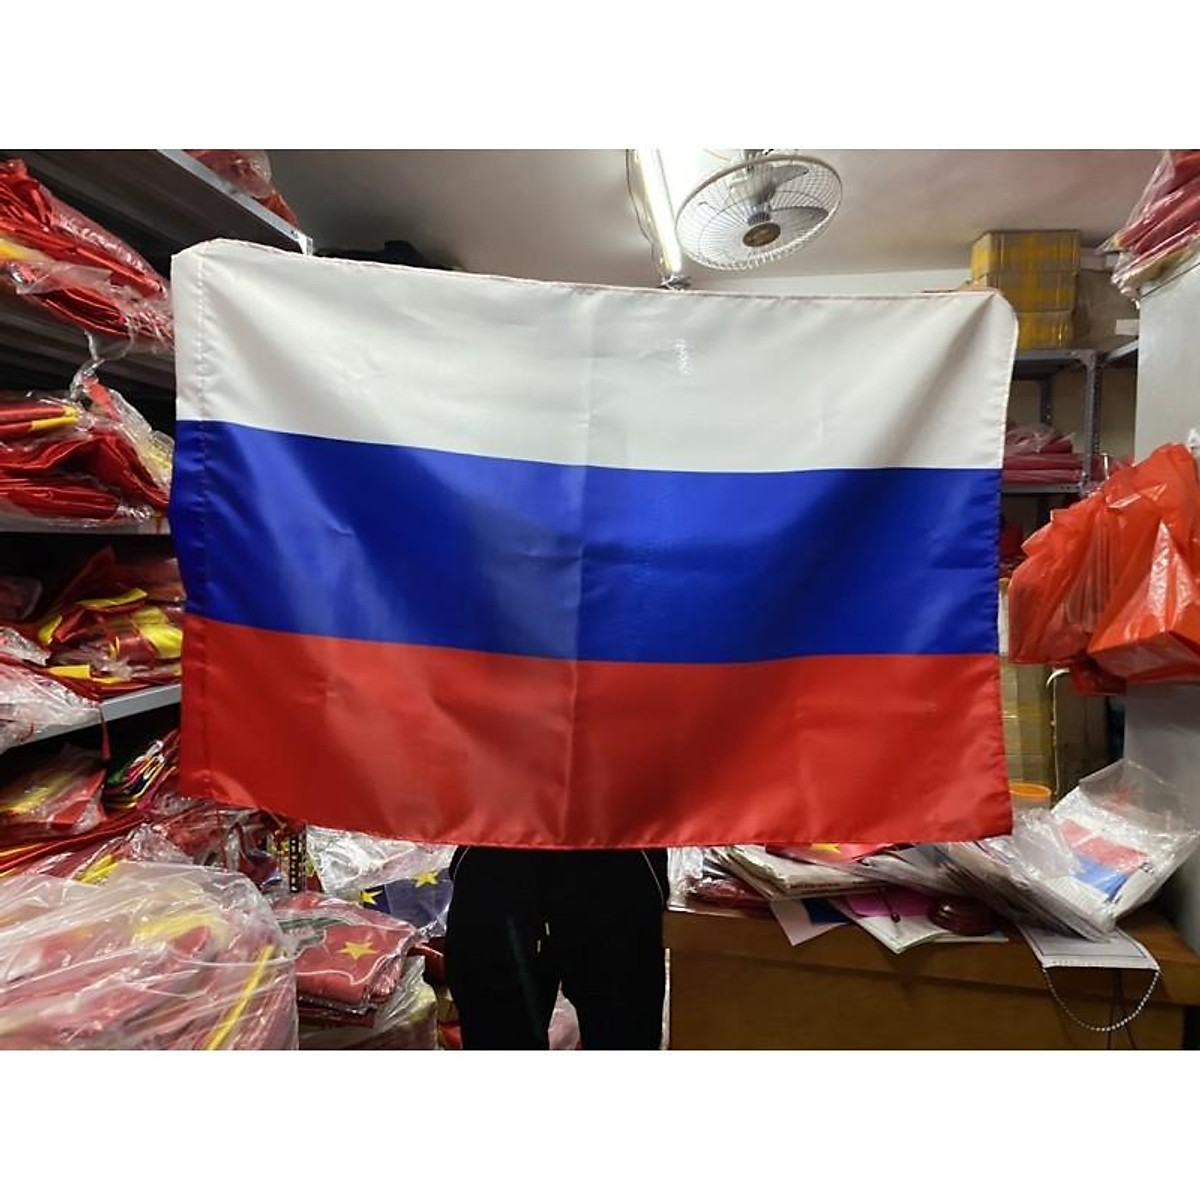 Bạn muốn trang trí ngôi nhà của mình với cờ Nga để thể hiện tình yêu và lòng trung thành với đất nước Nga? Chúng tôi cung cấp những sản phẩm trang trí nhà cửa với cờ Nga độc đáo và đẹp mắt, chắc chắn sẽ mang lại sự ấm áp và đầy ý nghĩa cho không gian sống của bạn.